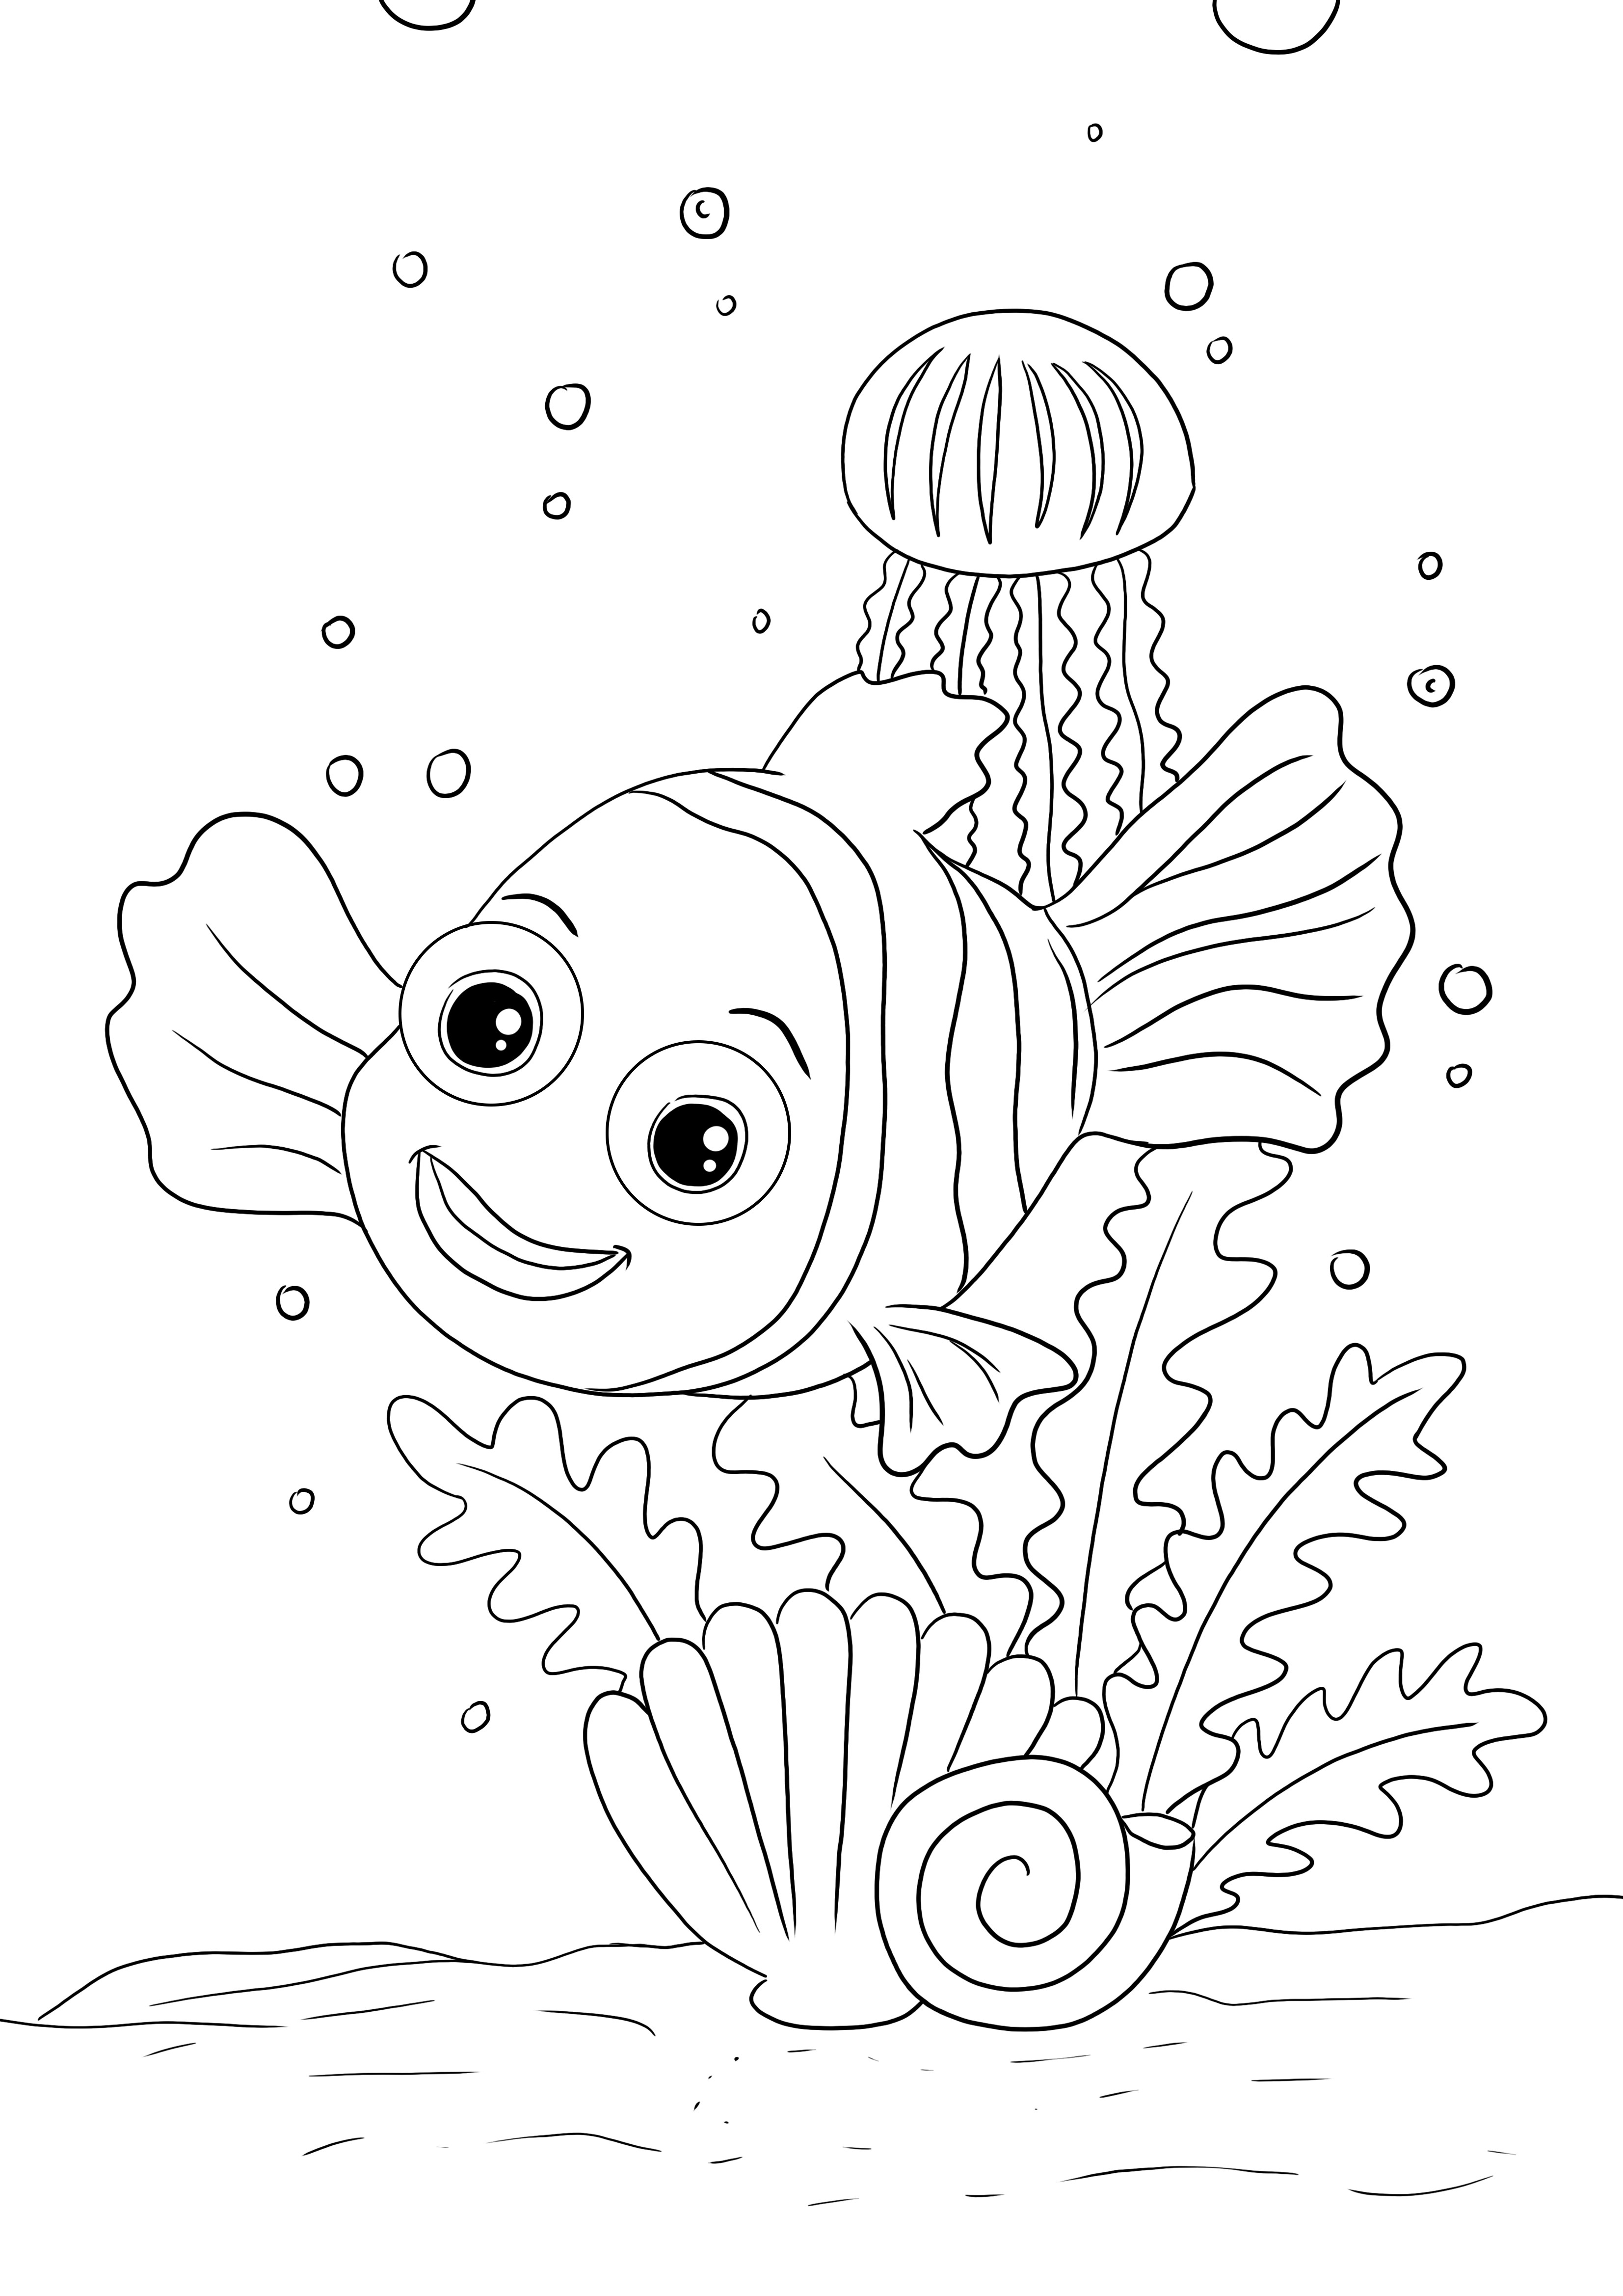 Happy Nemo imprimible gratis listo para colorear y aprender